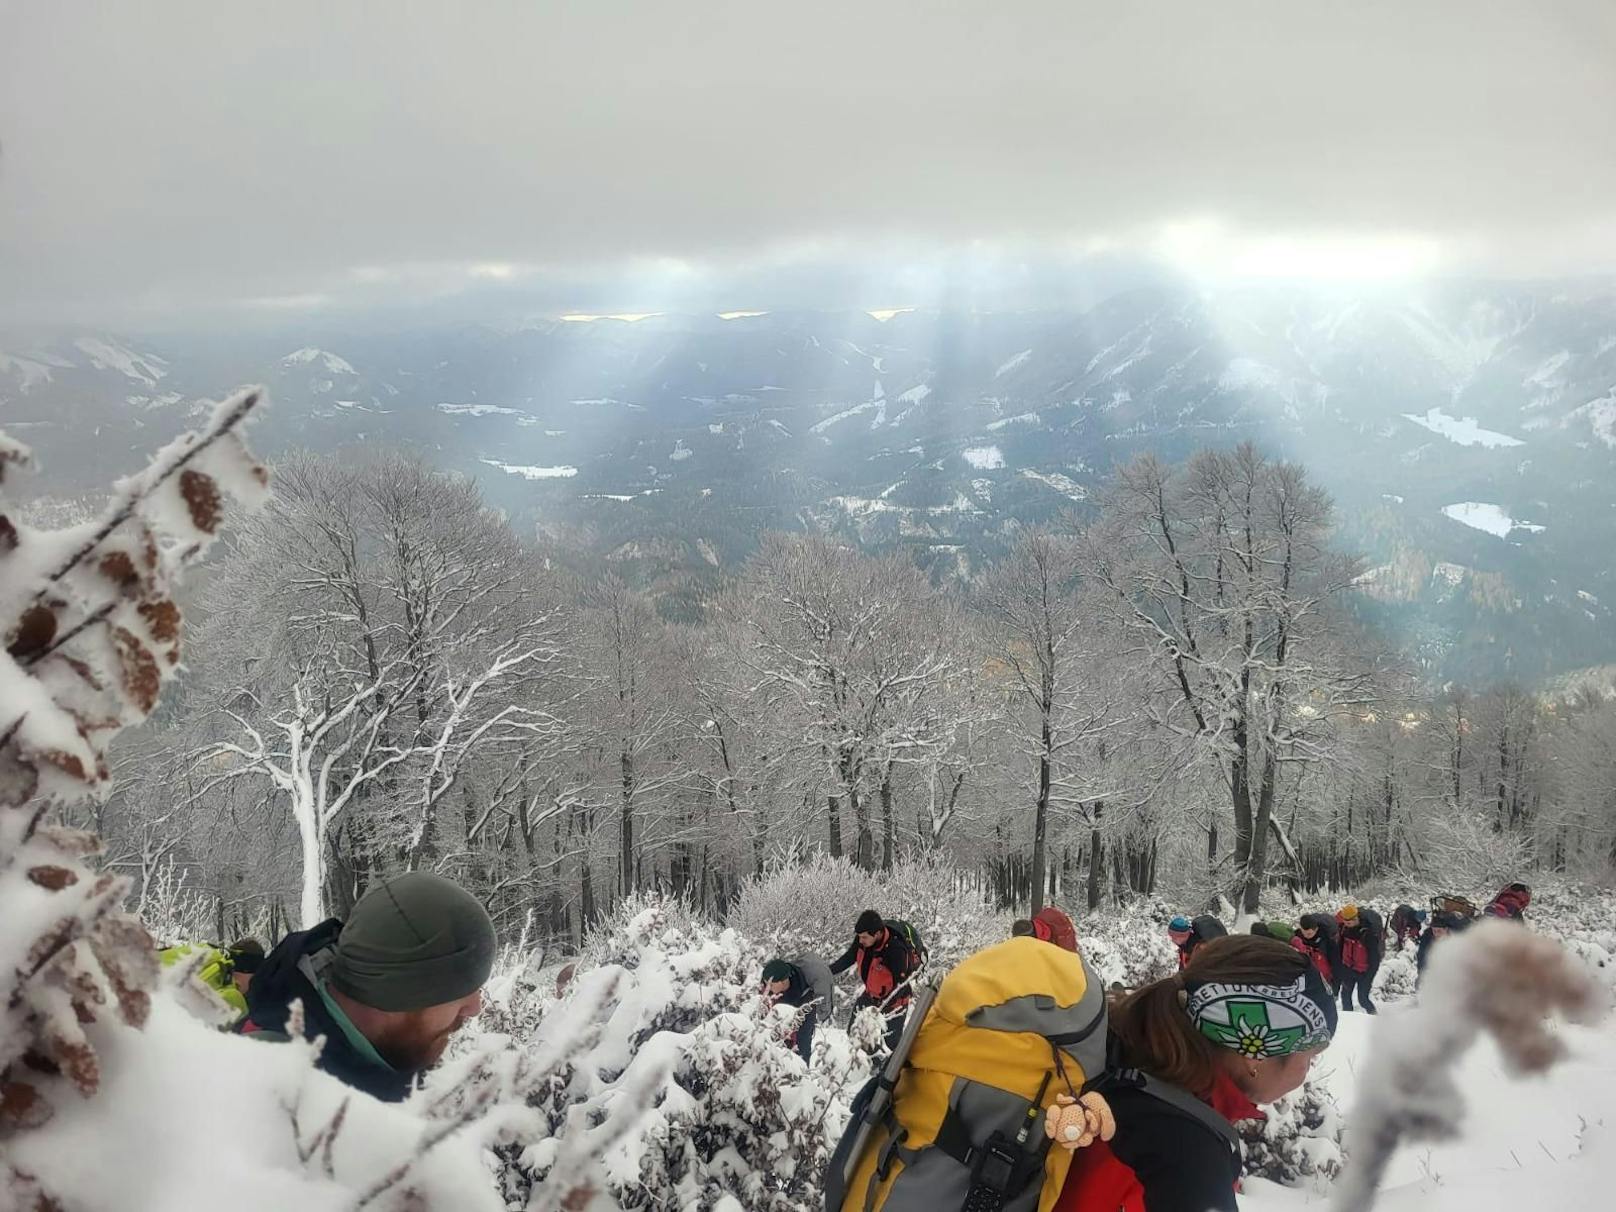 Laut Bergrettung Niederösterreich trennte sich die Gruppe beim Abstieg über den Rauen Kamm, wo sie von den winterlichen Bedingungen überrascht worden sein dürften.